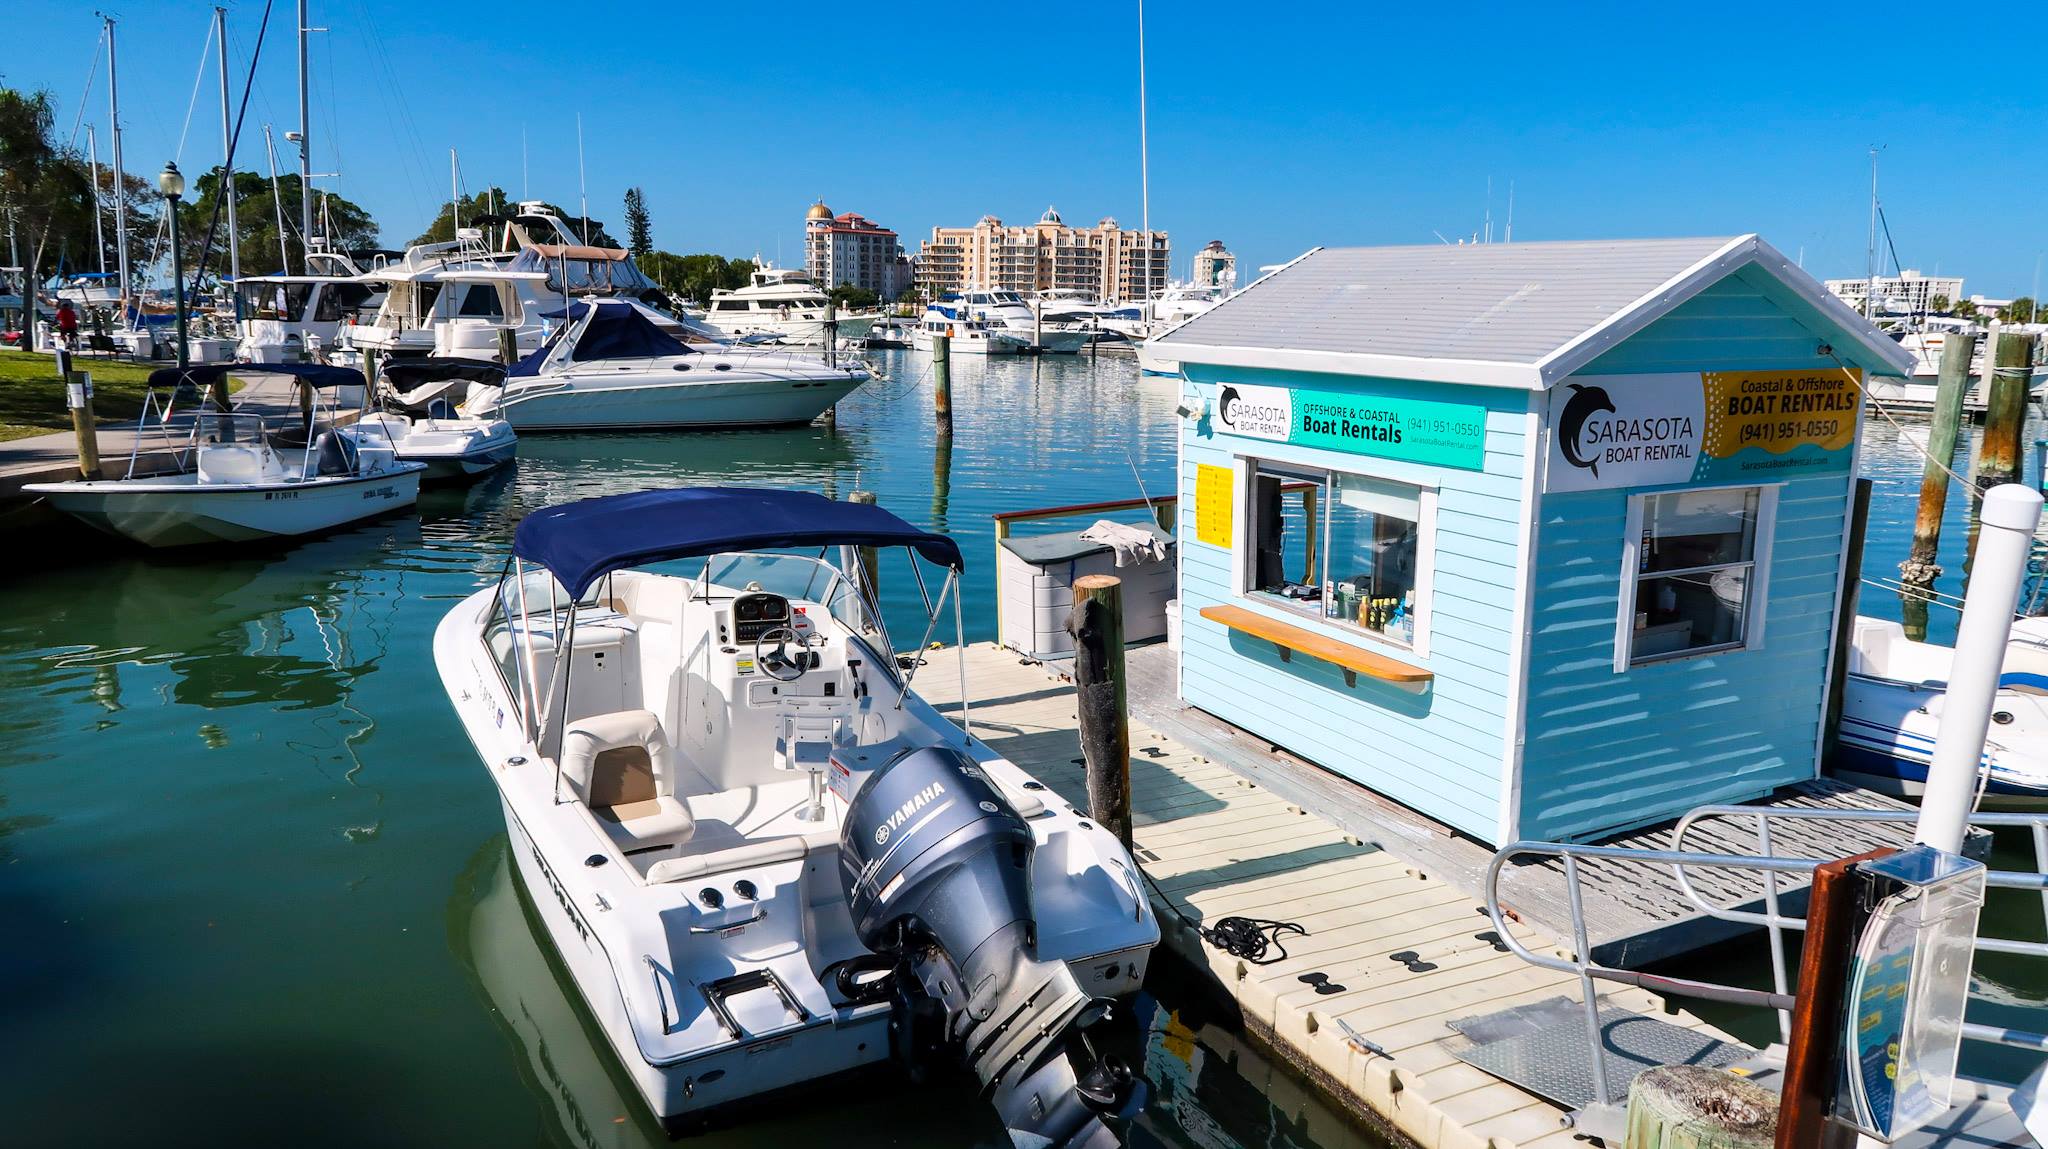 Sarasota Boat Rental - Sarasota Boat Rental